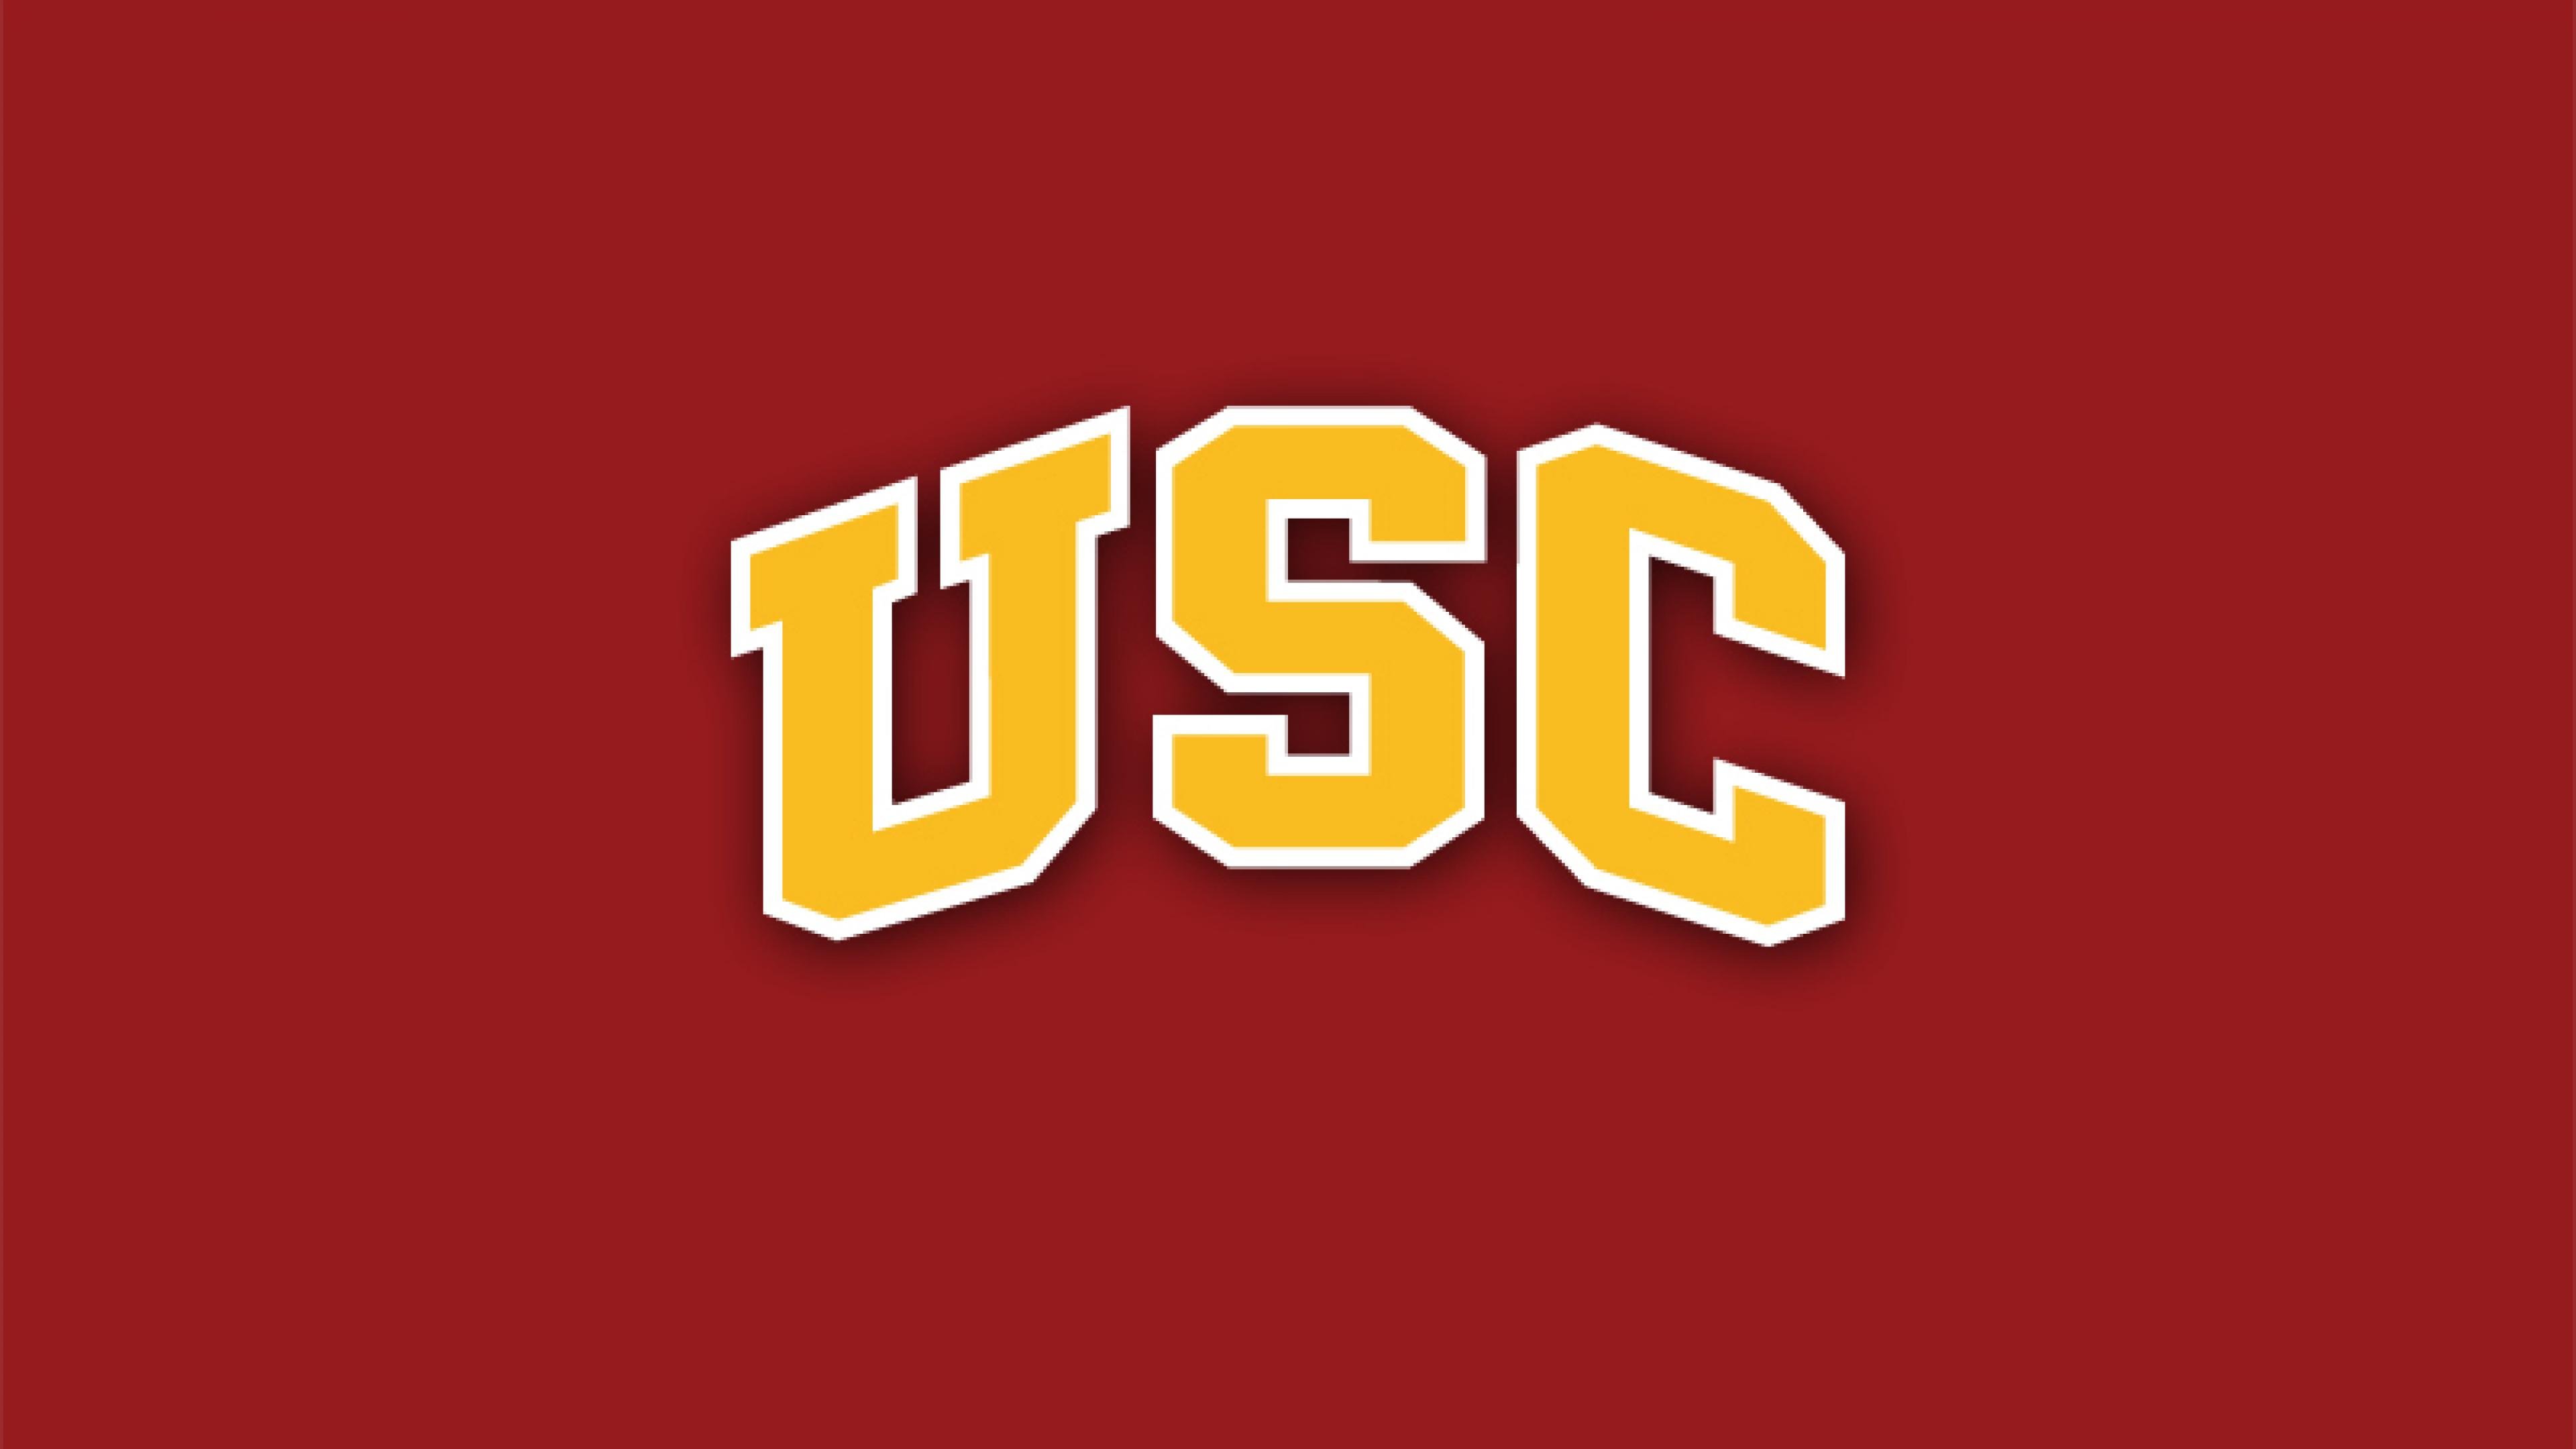 USC TROJANS college football wallpaper 3840x2160 592775